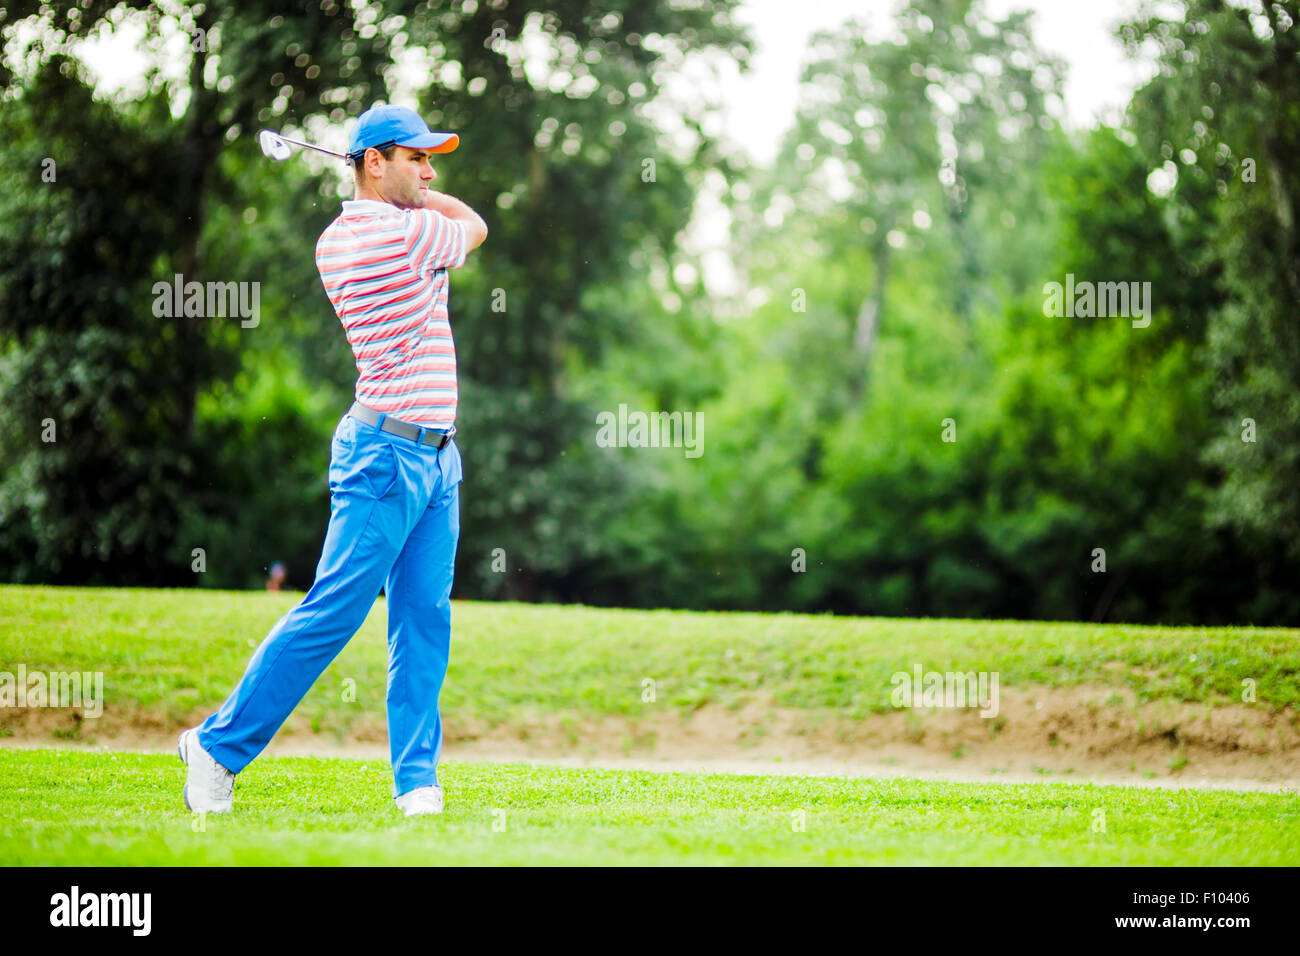 La pratique de la concentration et golfeur avant et après coup par une belle journée ensoleillée Banque D'Images